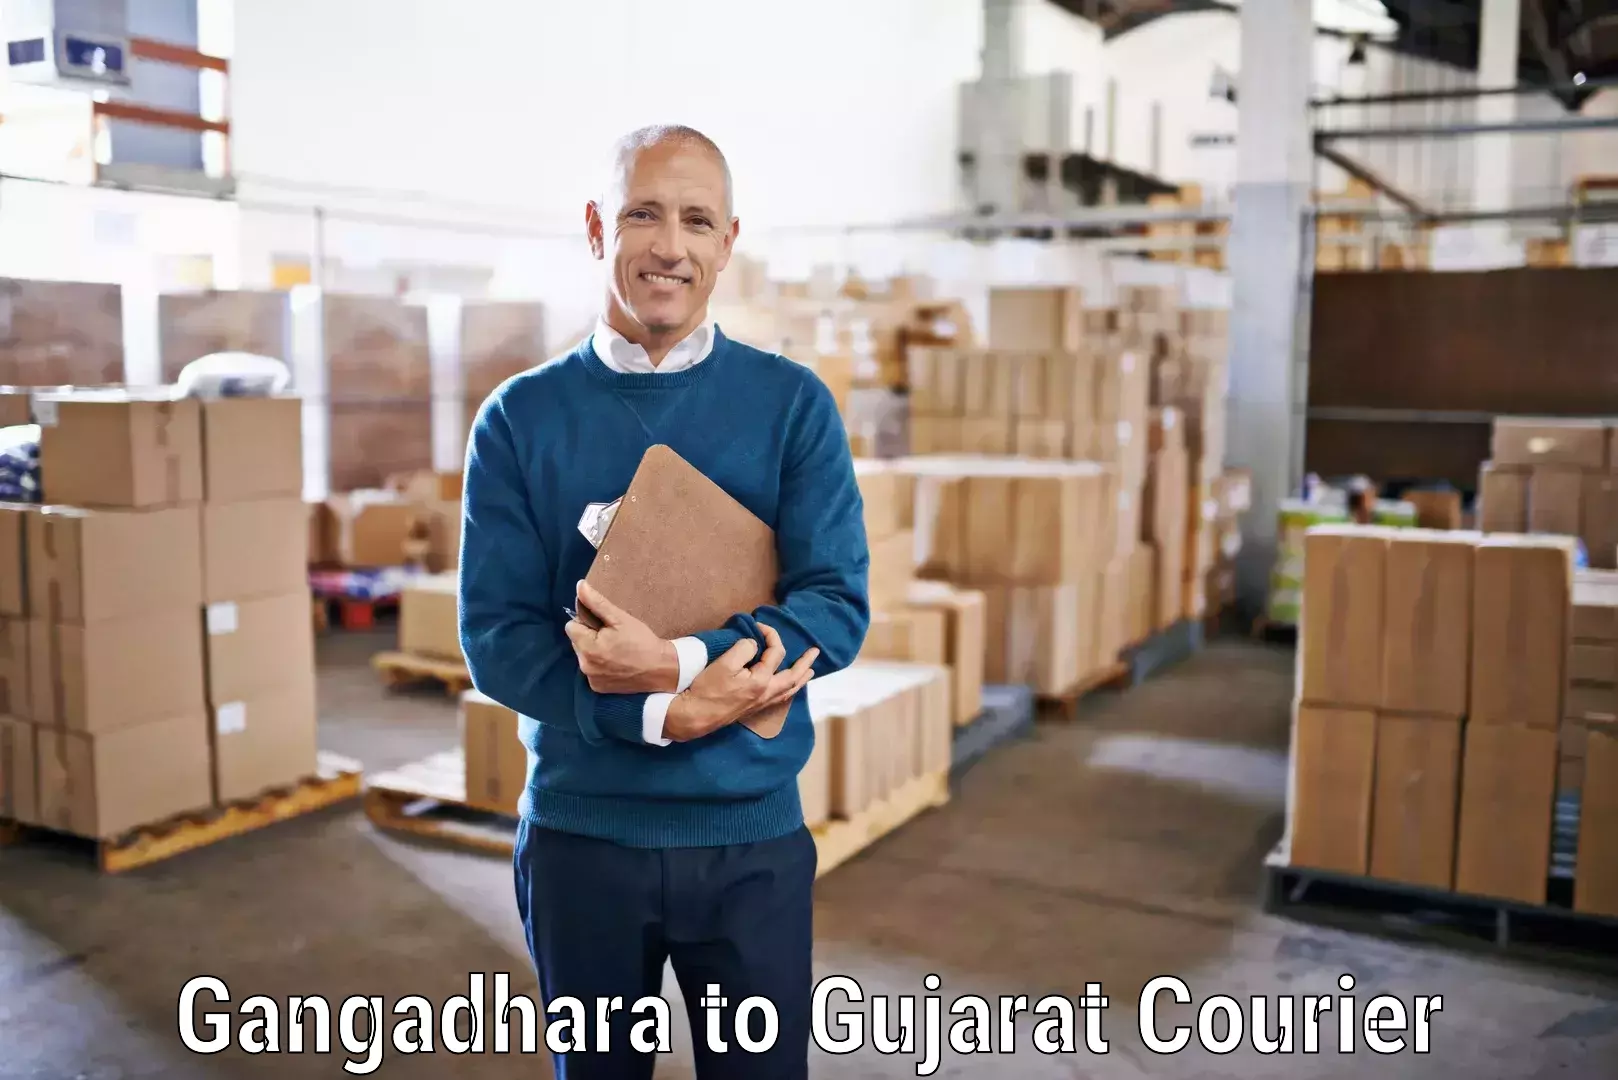 Large package courier in Gangadhara to Katodara